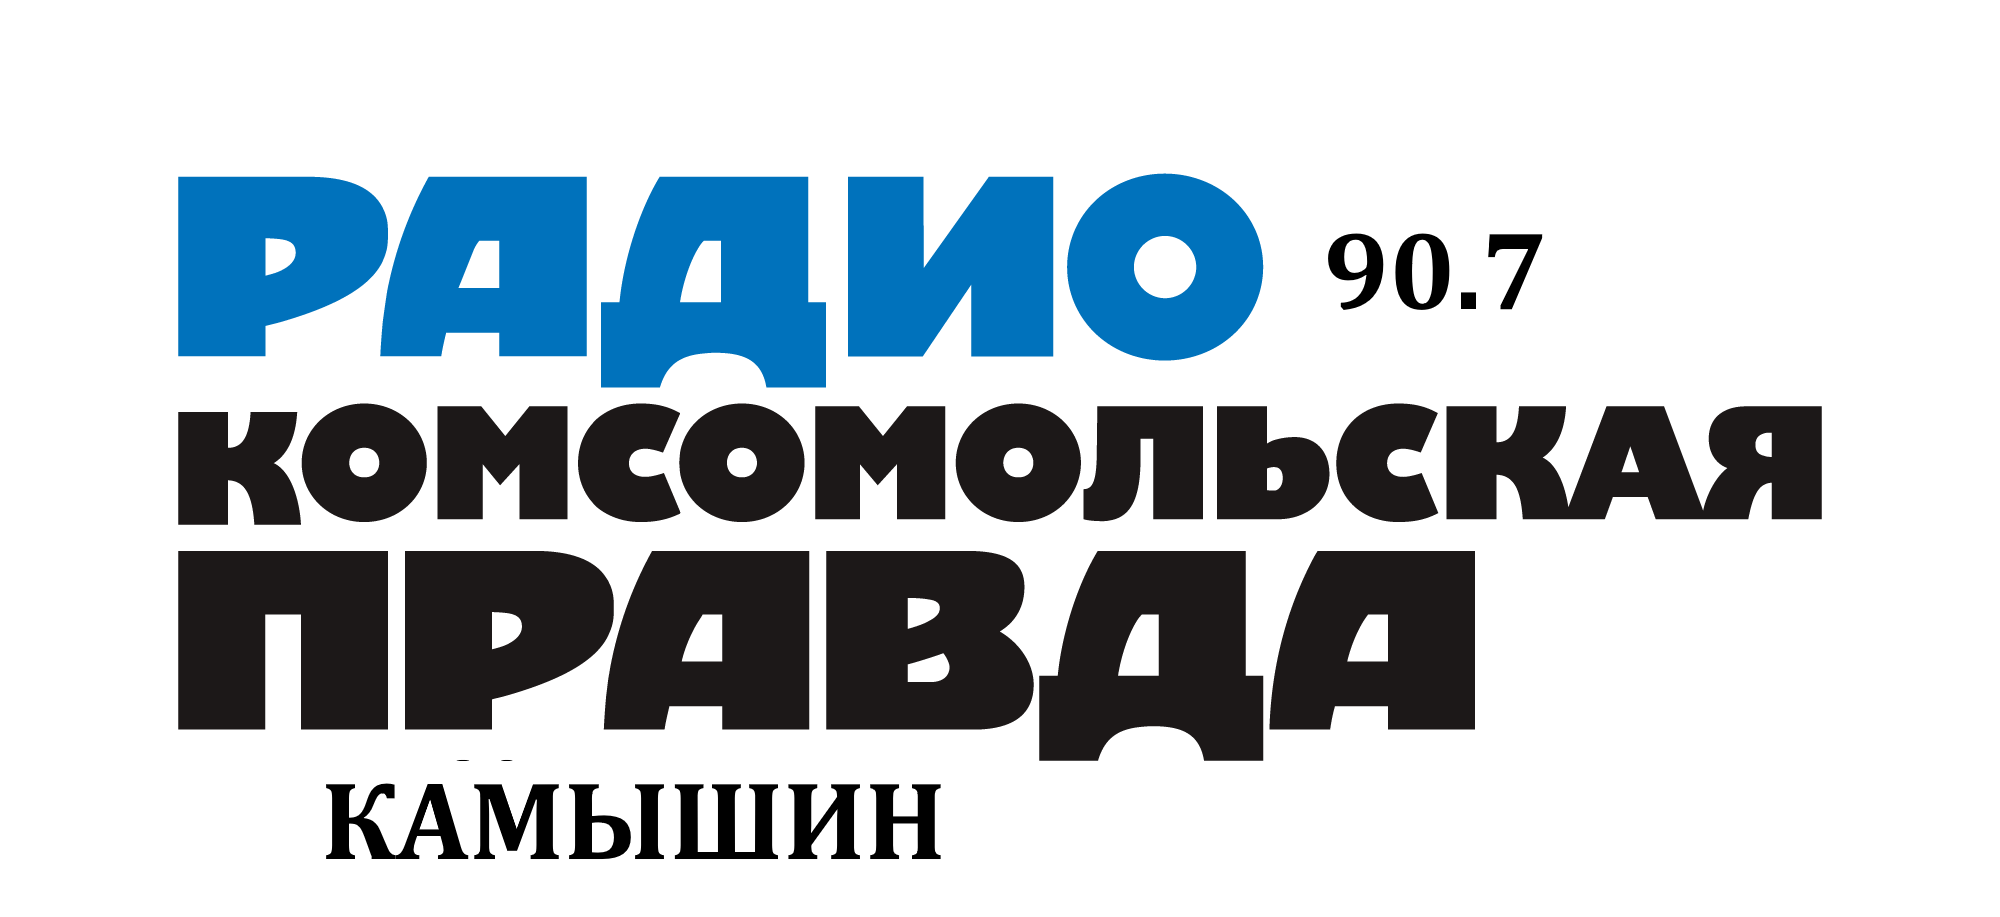 Раземщение рекламы Комсомольская правда 90.7 FM, г. Камышин